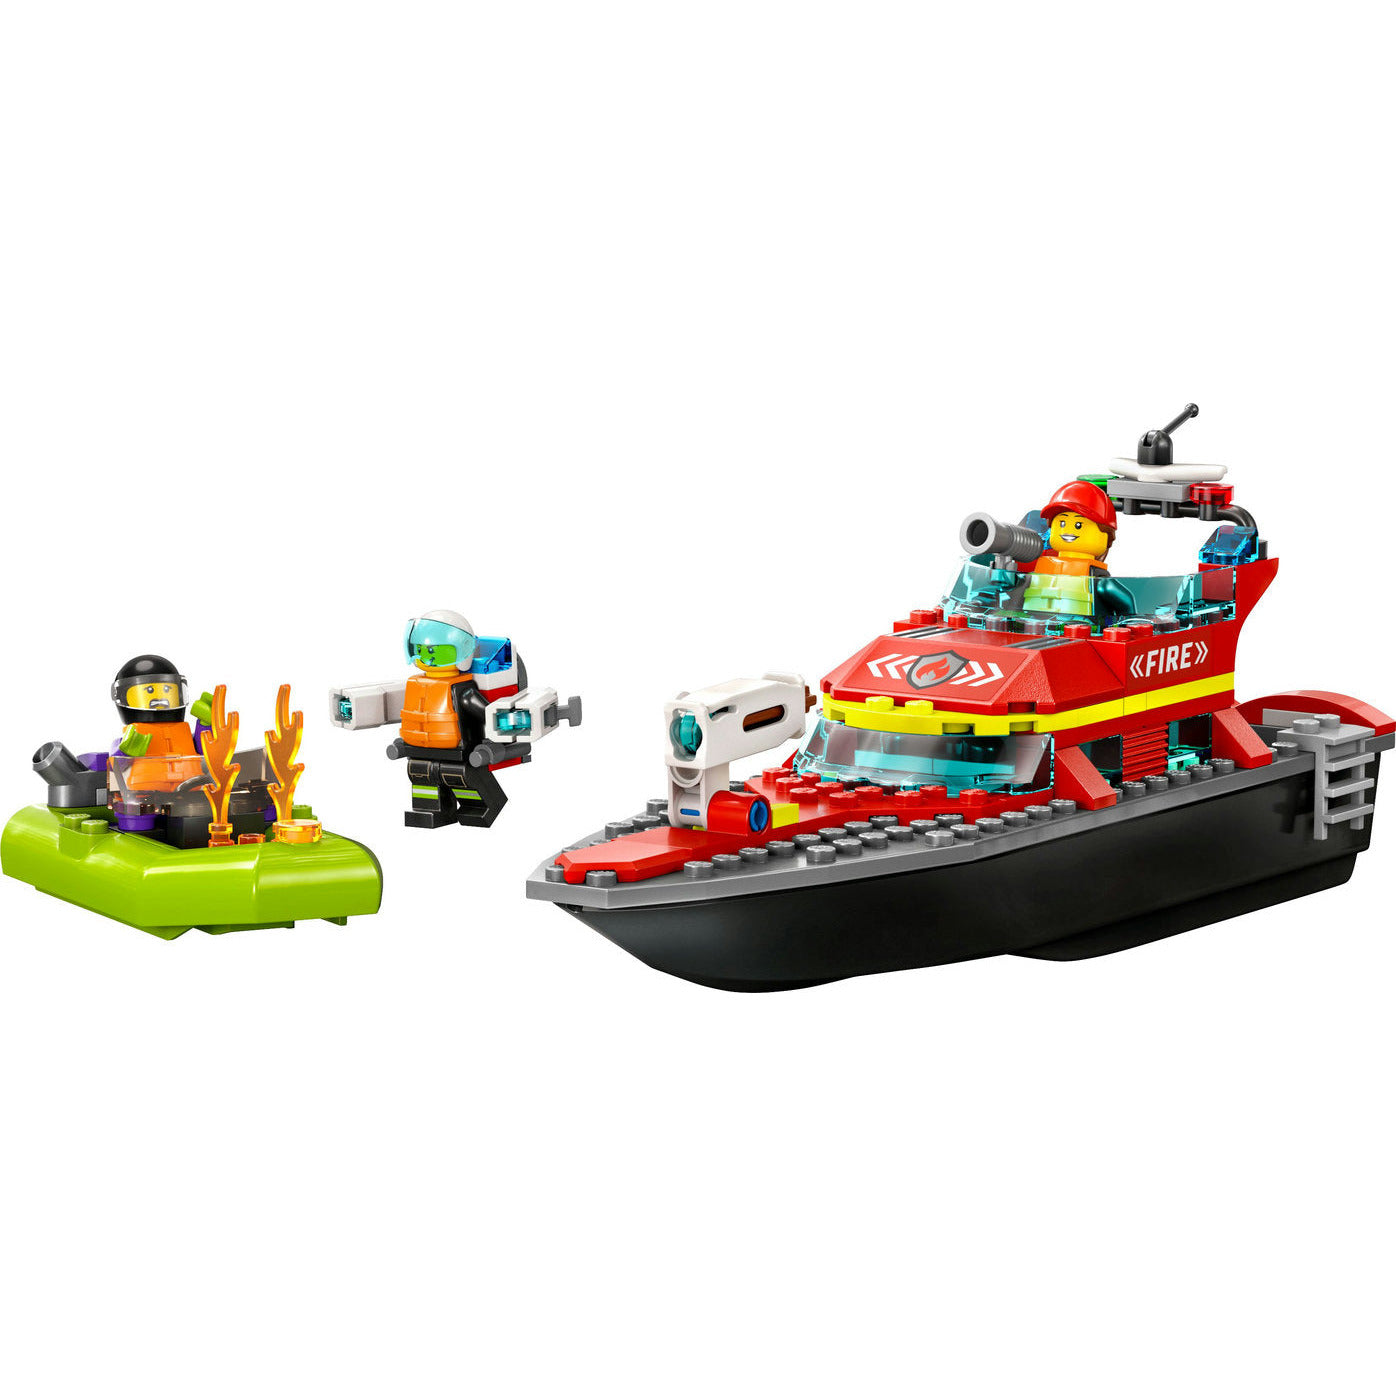 Fire Rescue Boat - LEGO City